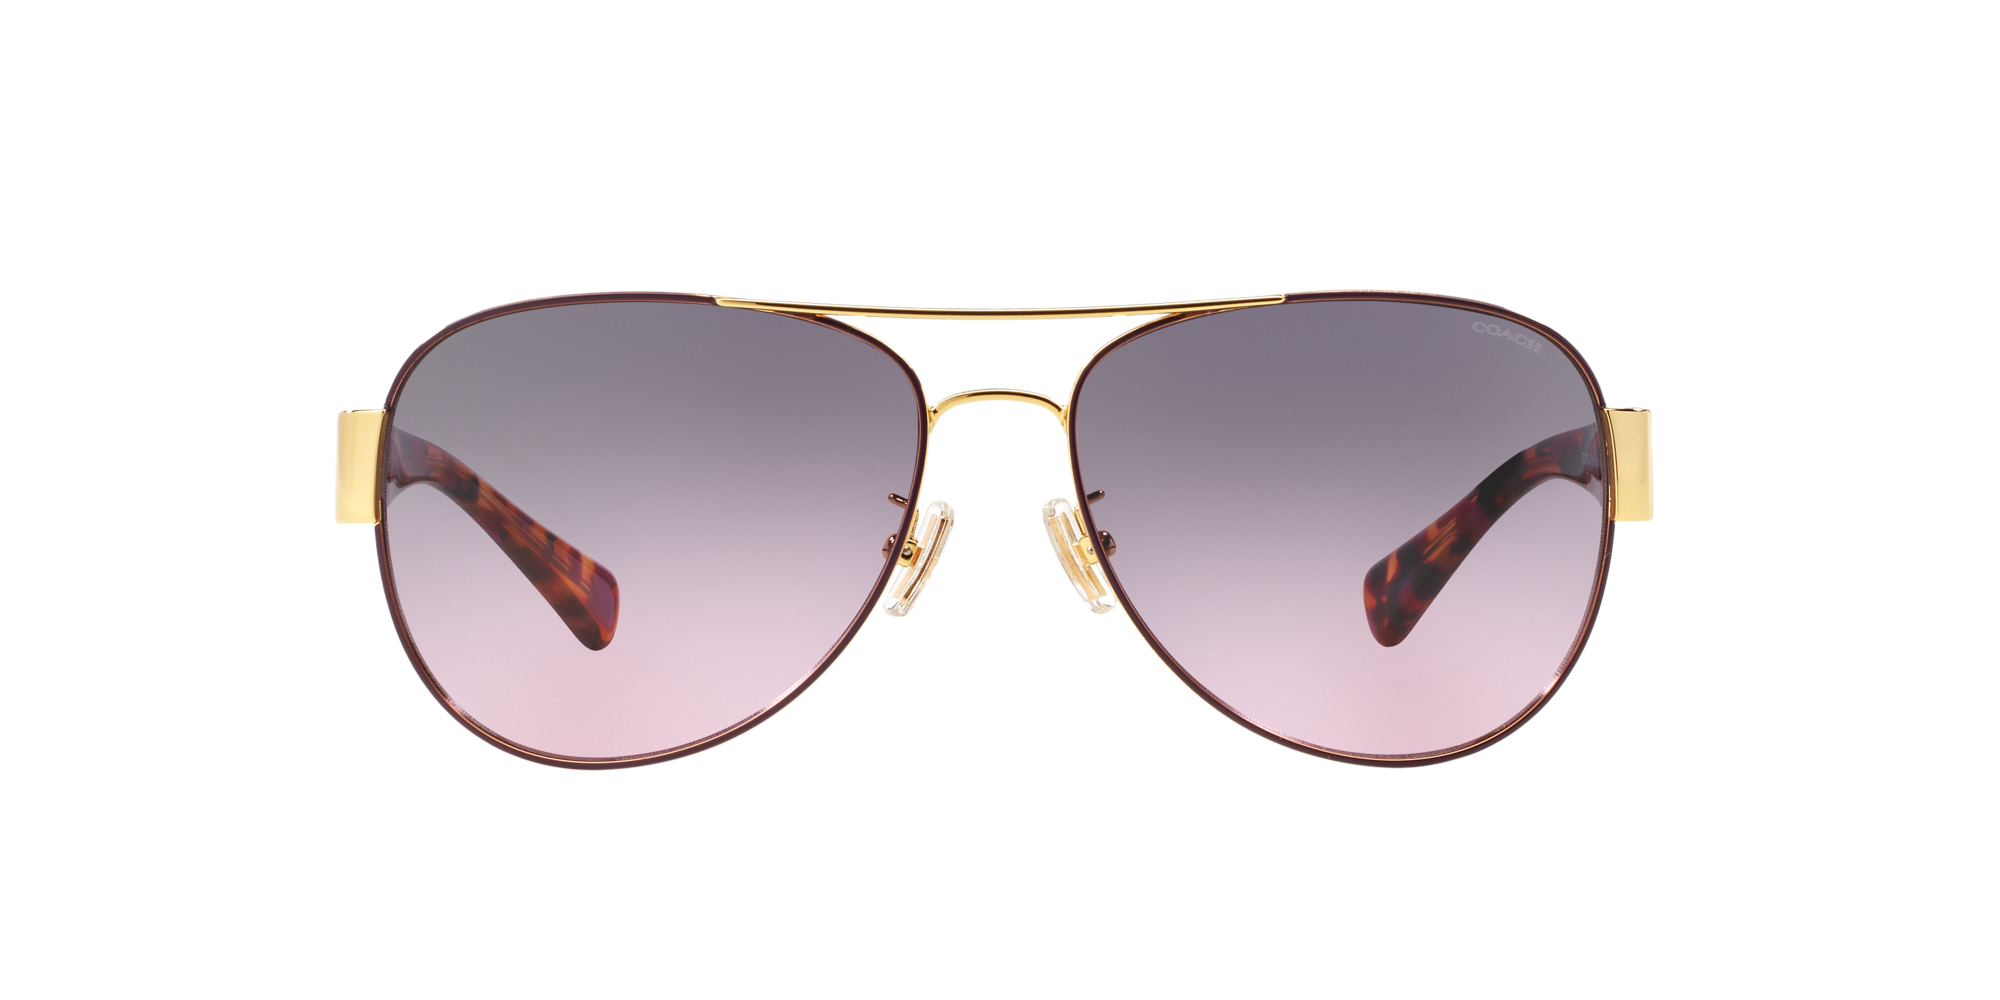 Buy Coach Green Core Round Sunglasses for Men Online @ Tata CLiQ Luxury